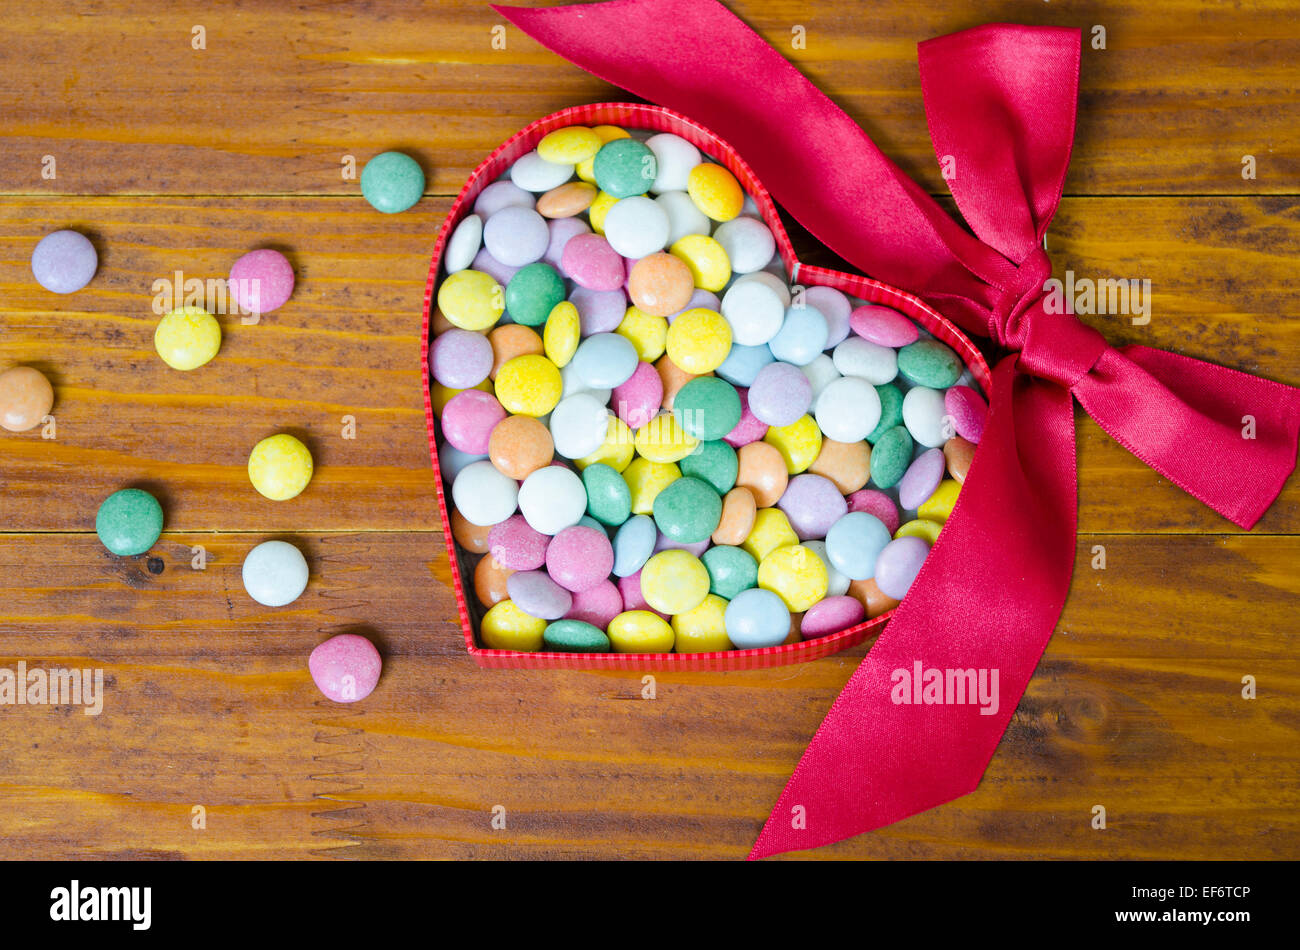 Corazones de chocolate con leche de San Valentín, corazones cremosos de  chocolate con leche, golosinas navideñas, láminas envueltas  individualmente